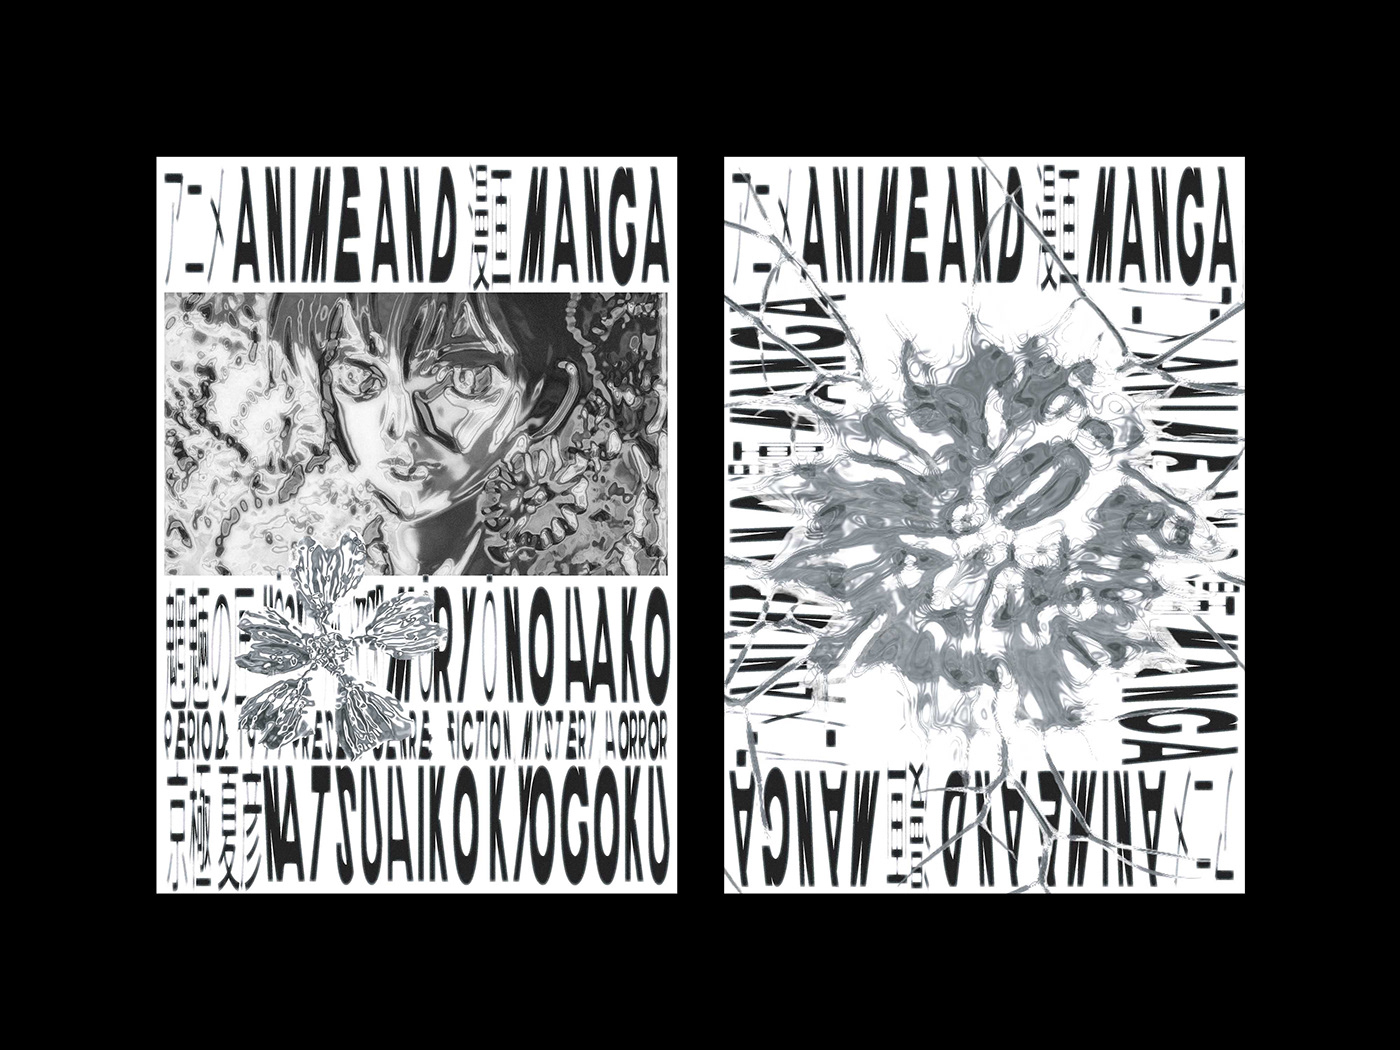 アニメ anime 漫画 manga poster edition editorial print